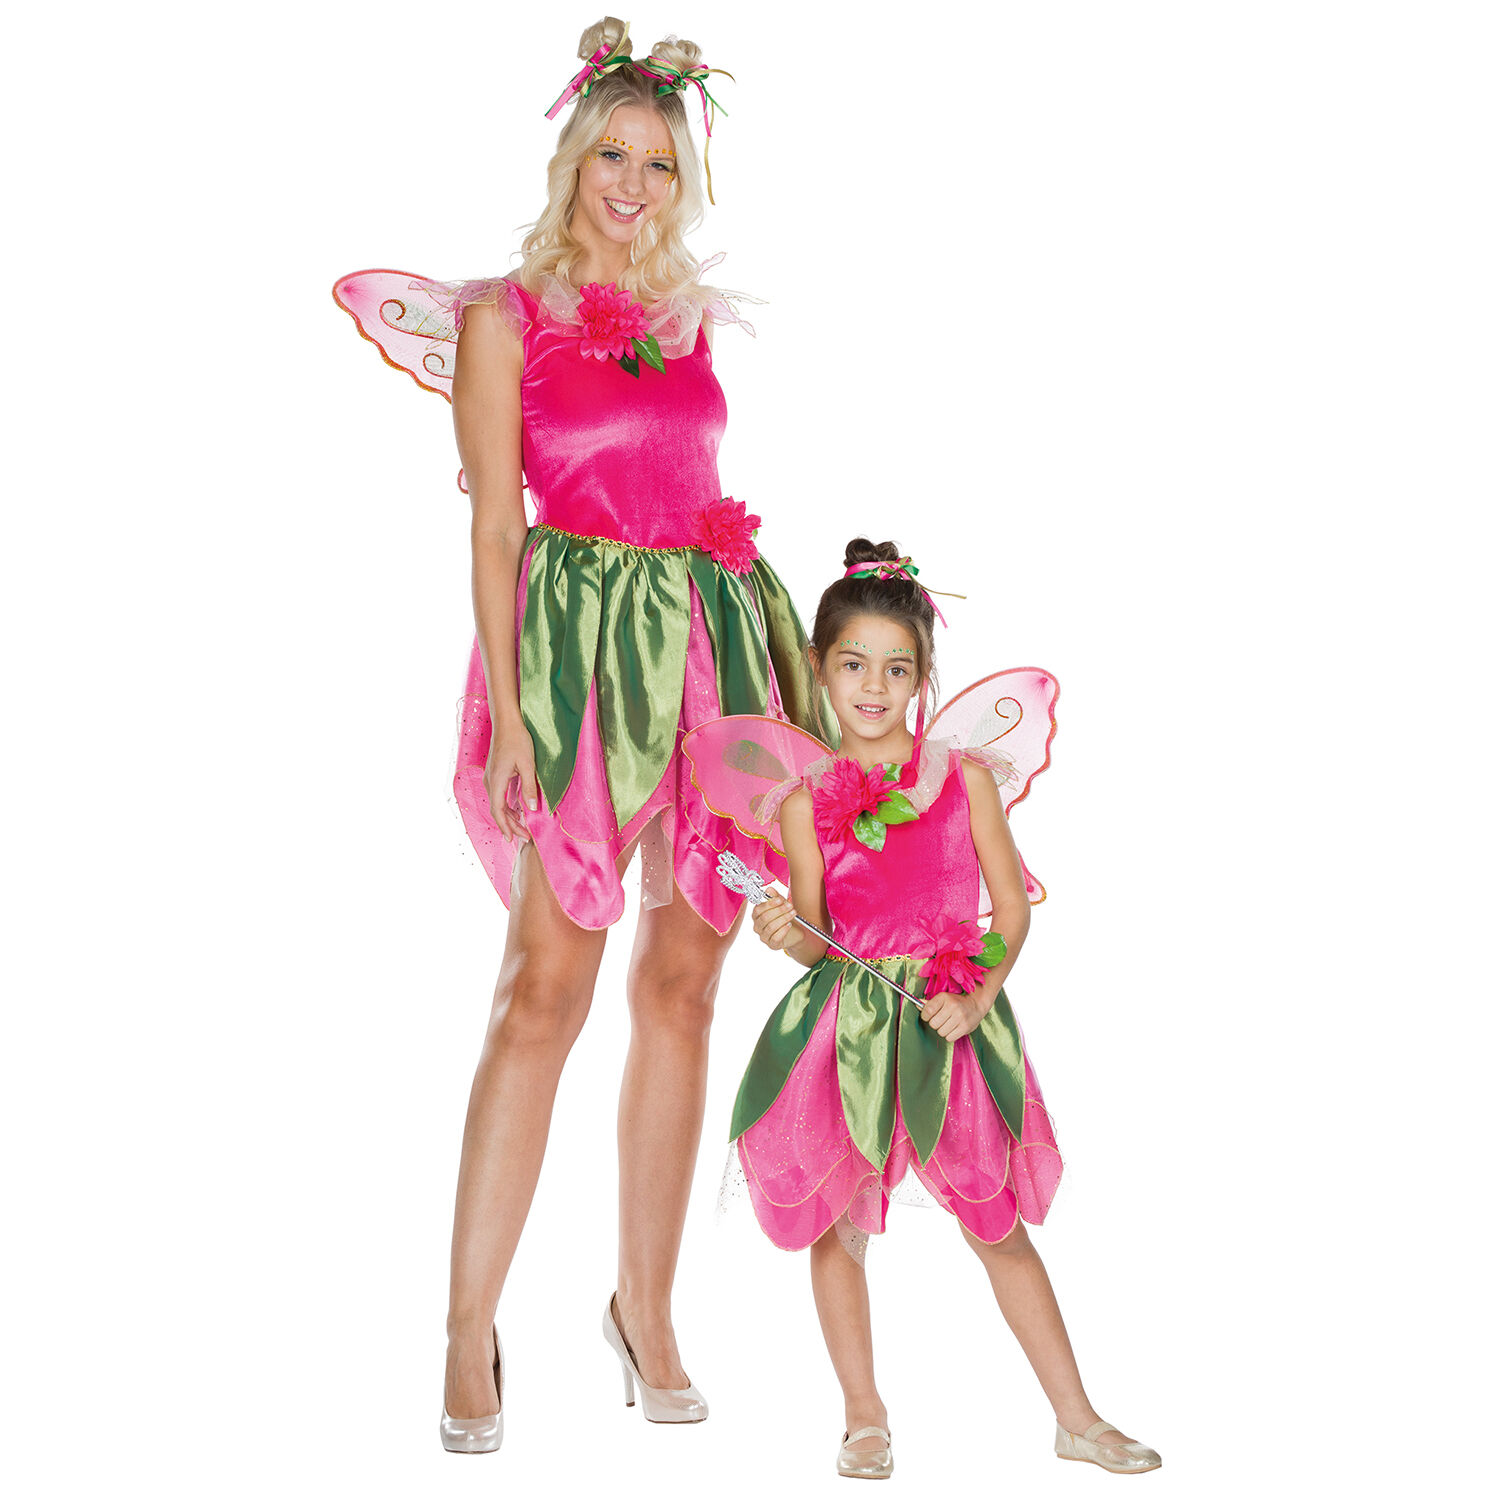 NEU Kinder-Kostüm Waldfee, Kleid mit Flügeln, pink, Gr. 104 Bild 2